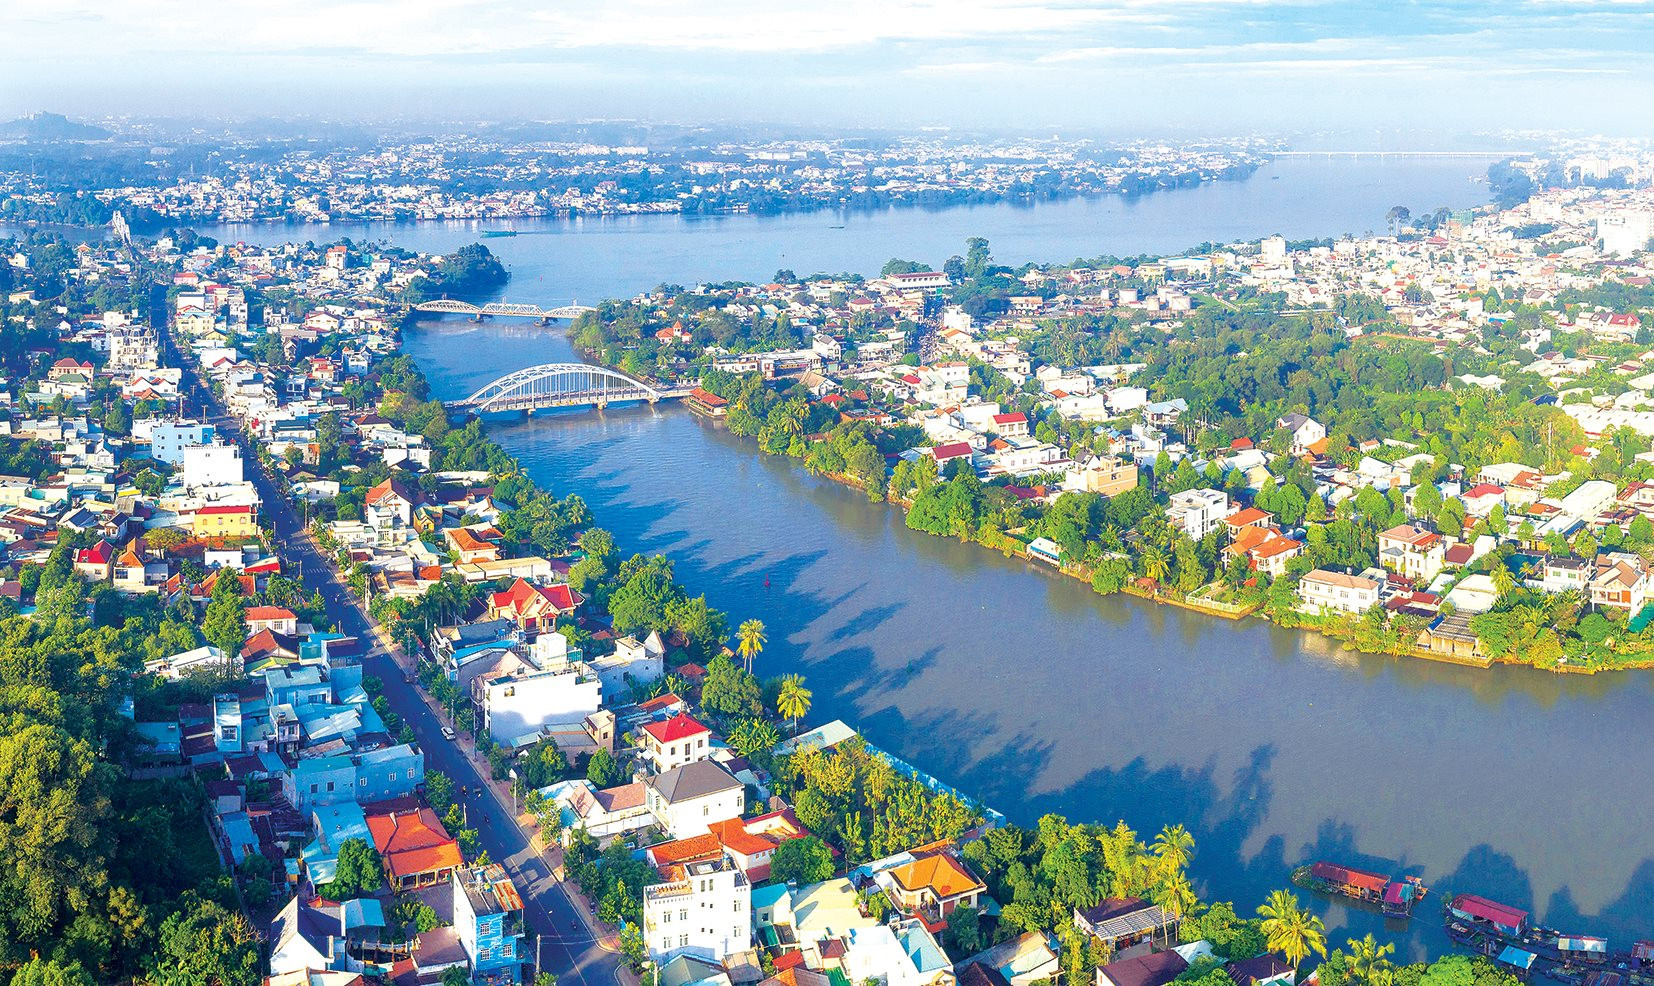 Tập đoàn Ecopark muốn thực hiện Khu đô thị sinh thái Nhơn Trạch quy mô 3.800ha